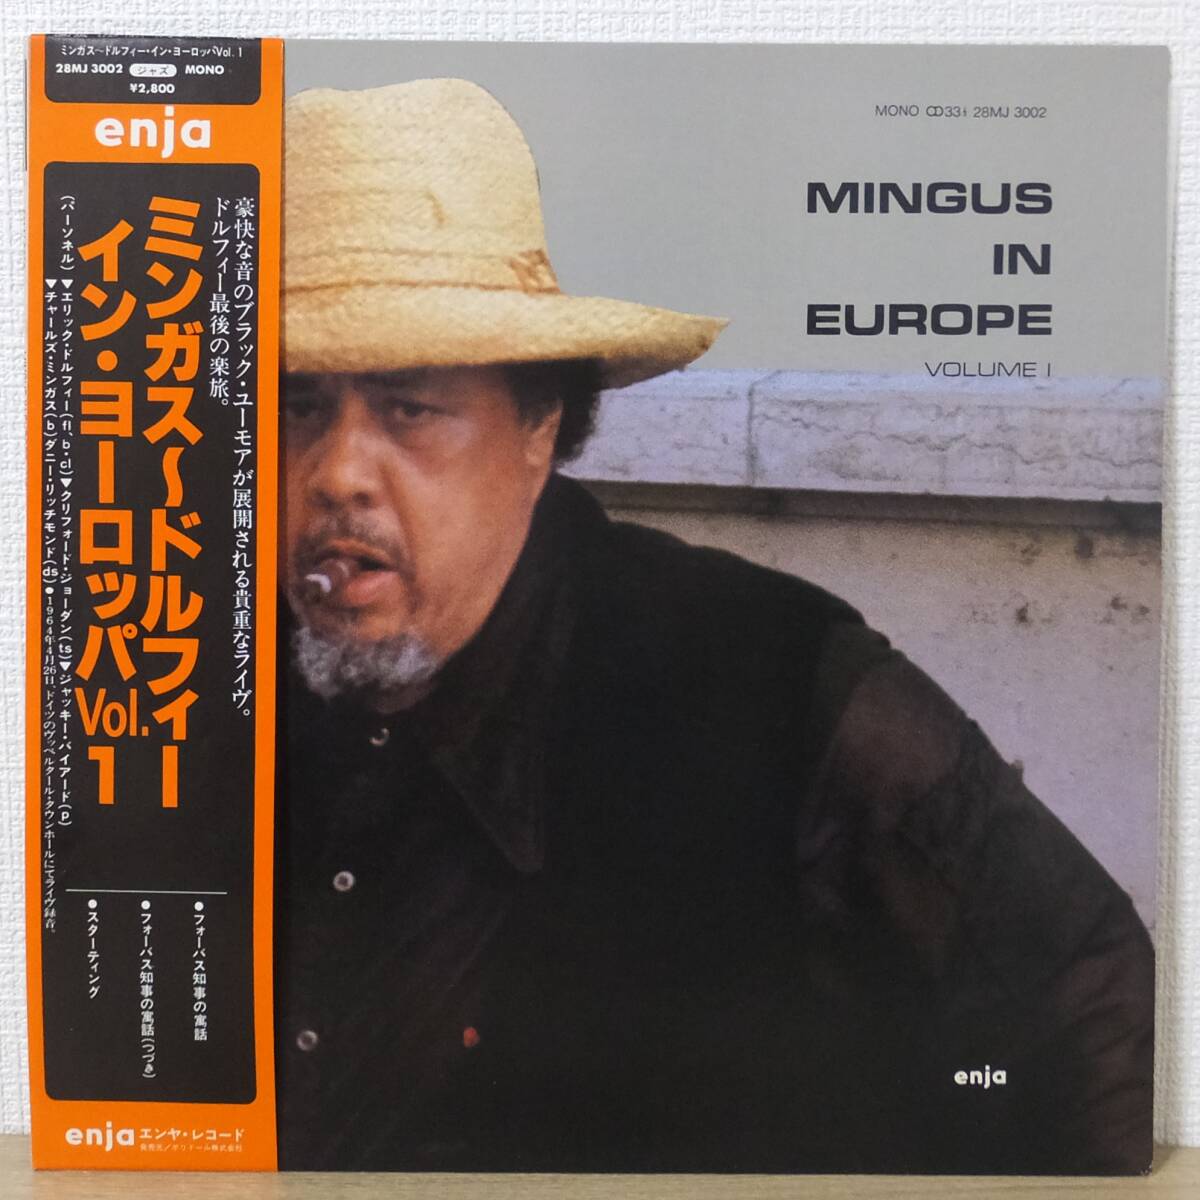 帯付 LPレコード MINGUS IN EUROPE VOLUME 1 ミンガス～ドルフィー イン・ヨーロッパ Vol.1 28MJ3002 enja エンヤ